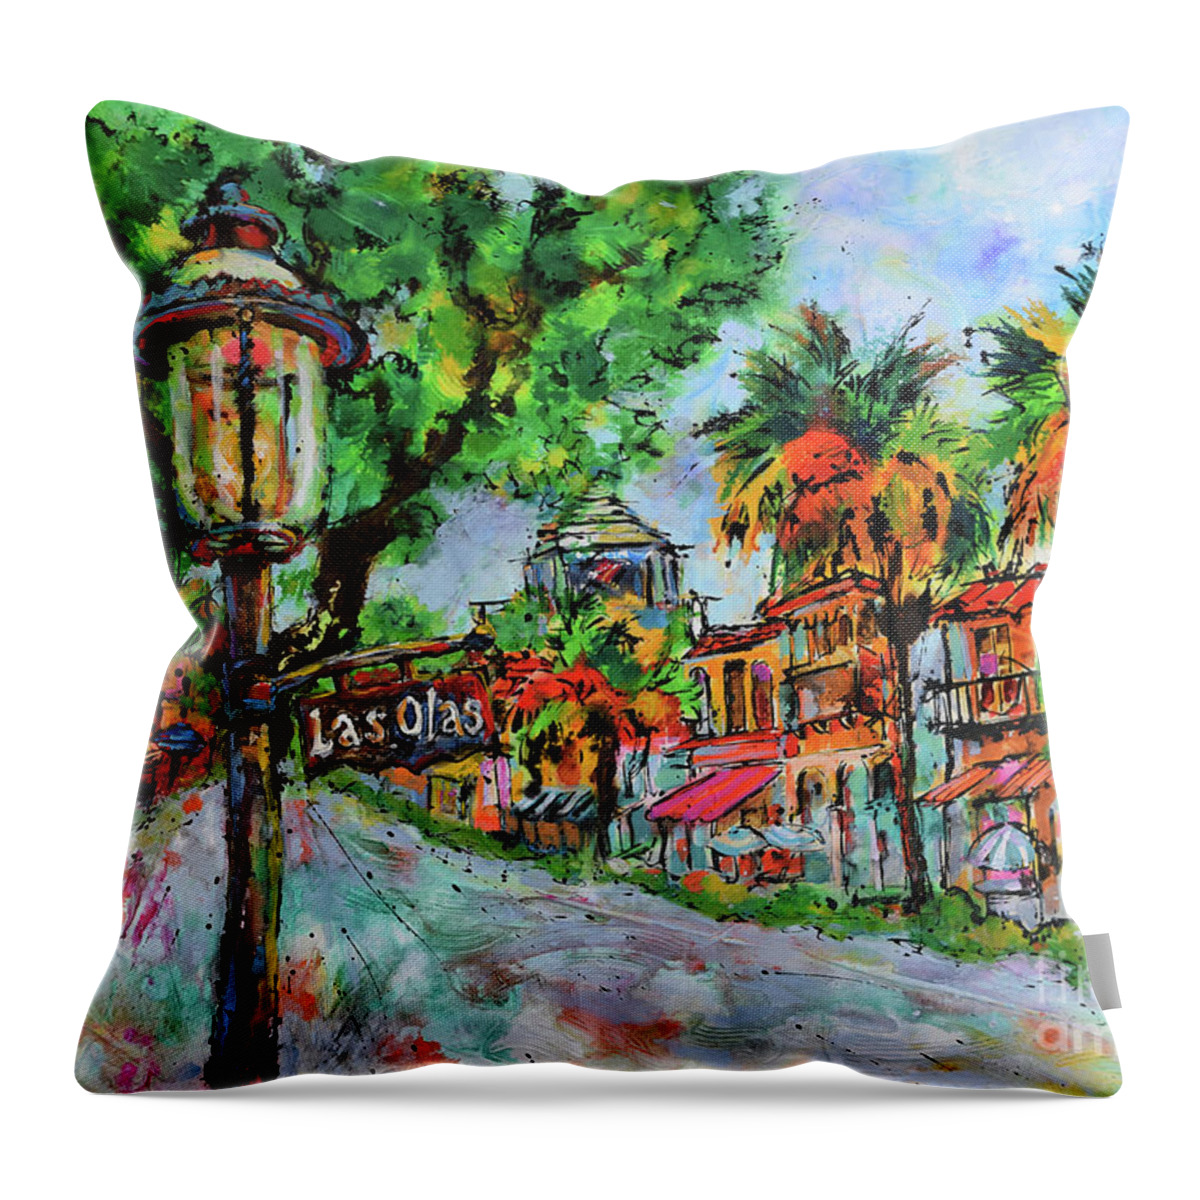 Las Olas Boulevard Throw Pillow featuring the painting Glorious Los Olas by Jyotika Shroff